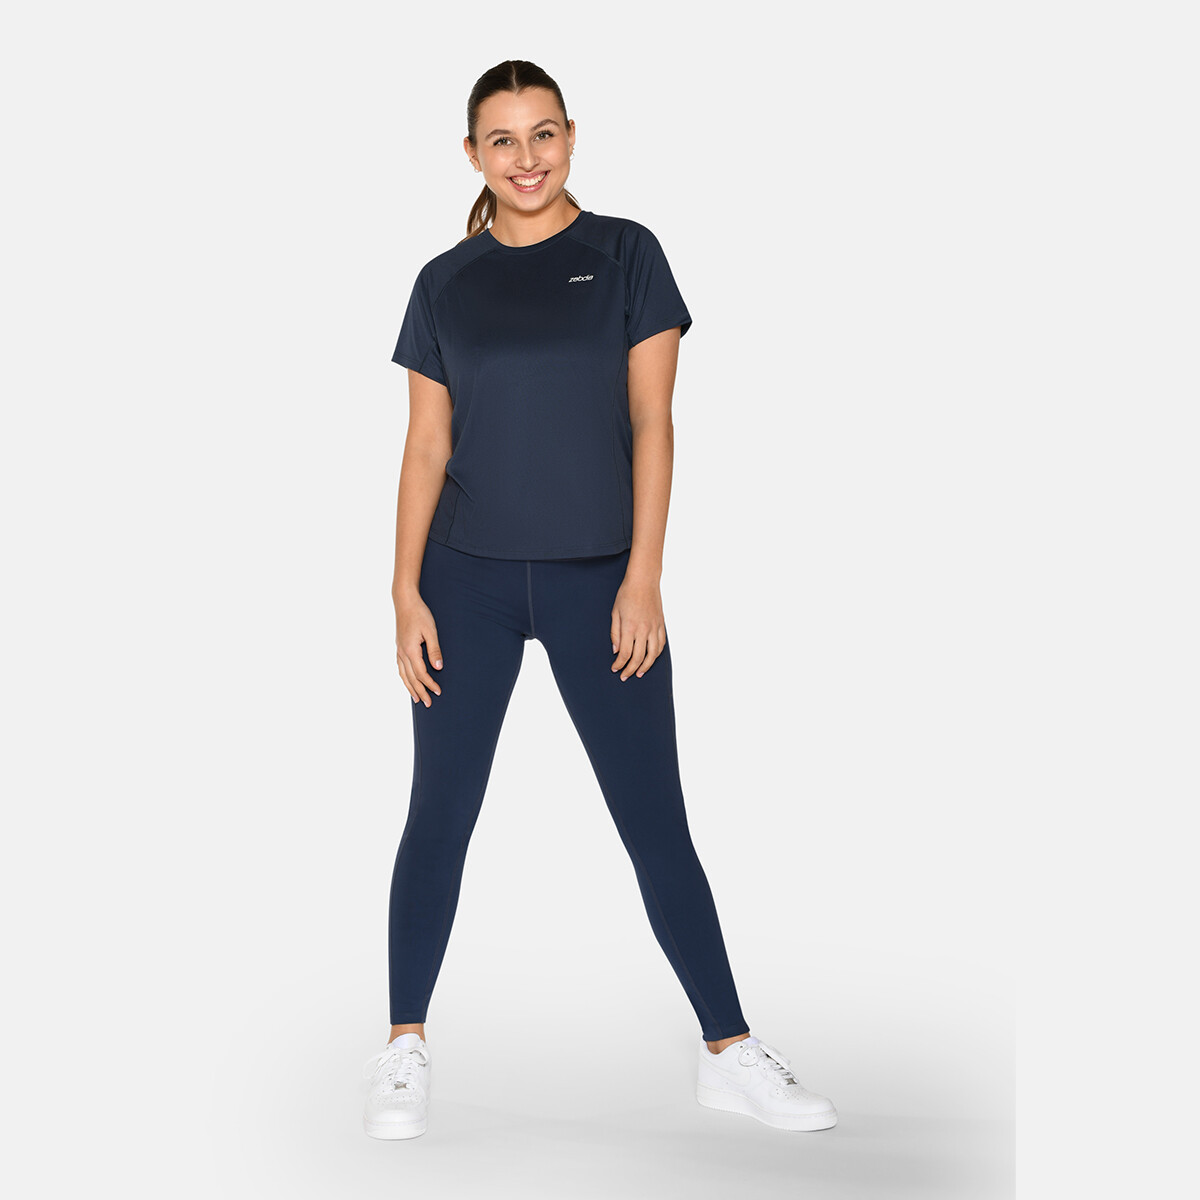 Billede af Zebdia Women Sports T-shirt, Farve: Blå, Størrelse: M, Dame hos Netlingeri.dk